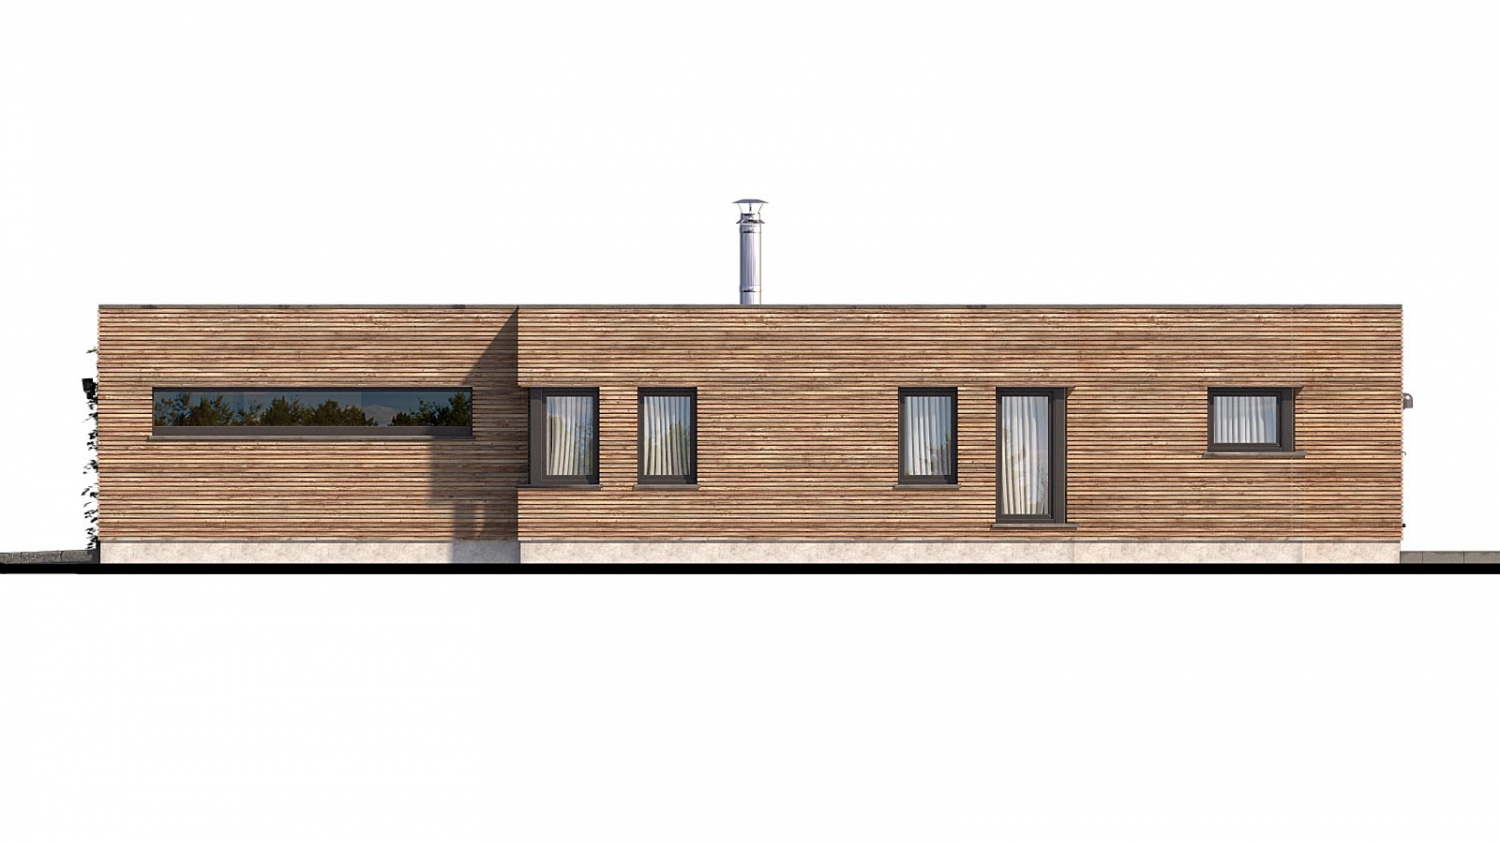 Zrkadlový pohľad 2. - Luxusní 4-pokojový zděný dům s dvojgaráží, plochou rovnou střechou.